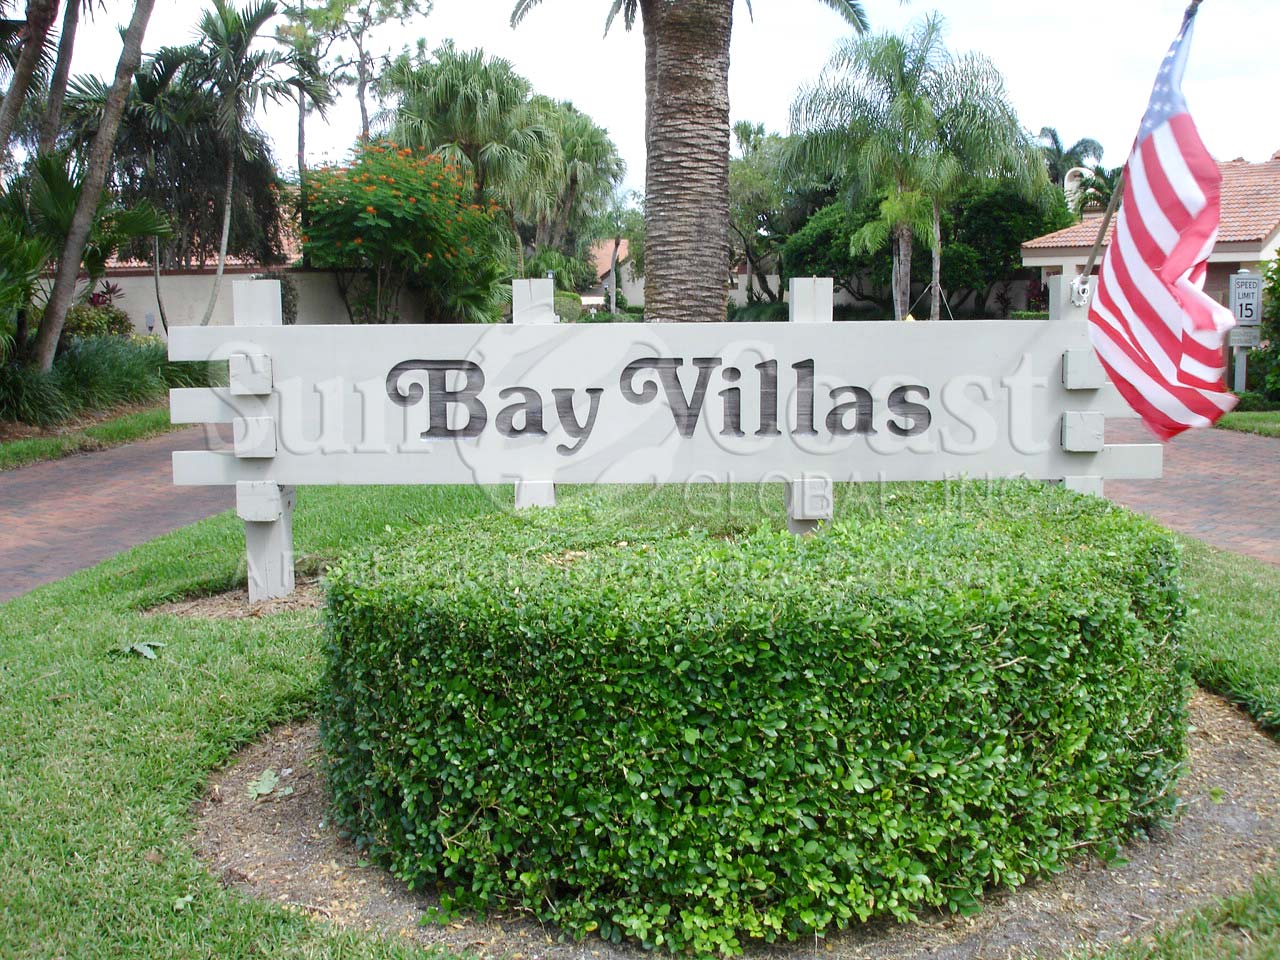 Bay Villas Signage